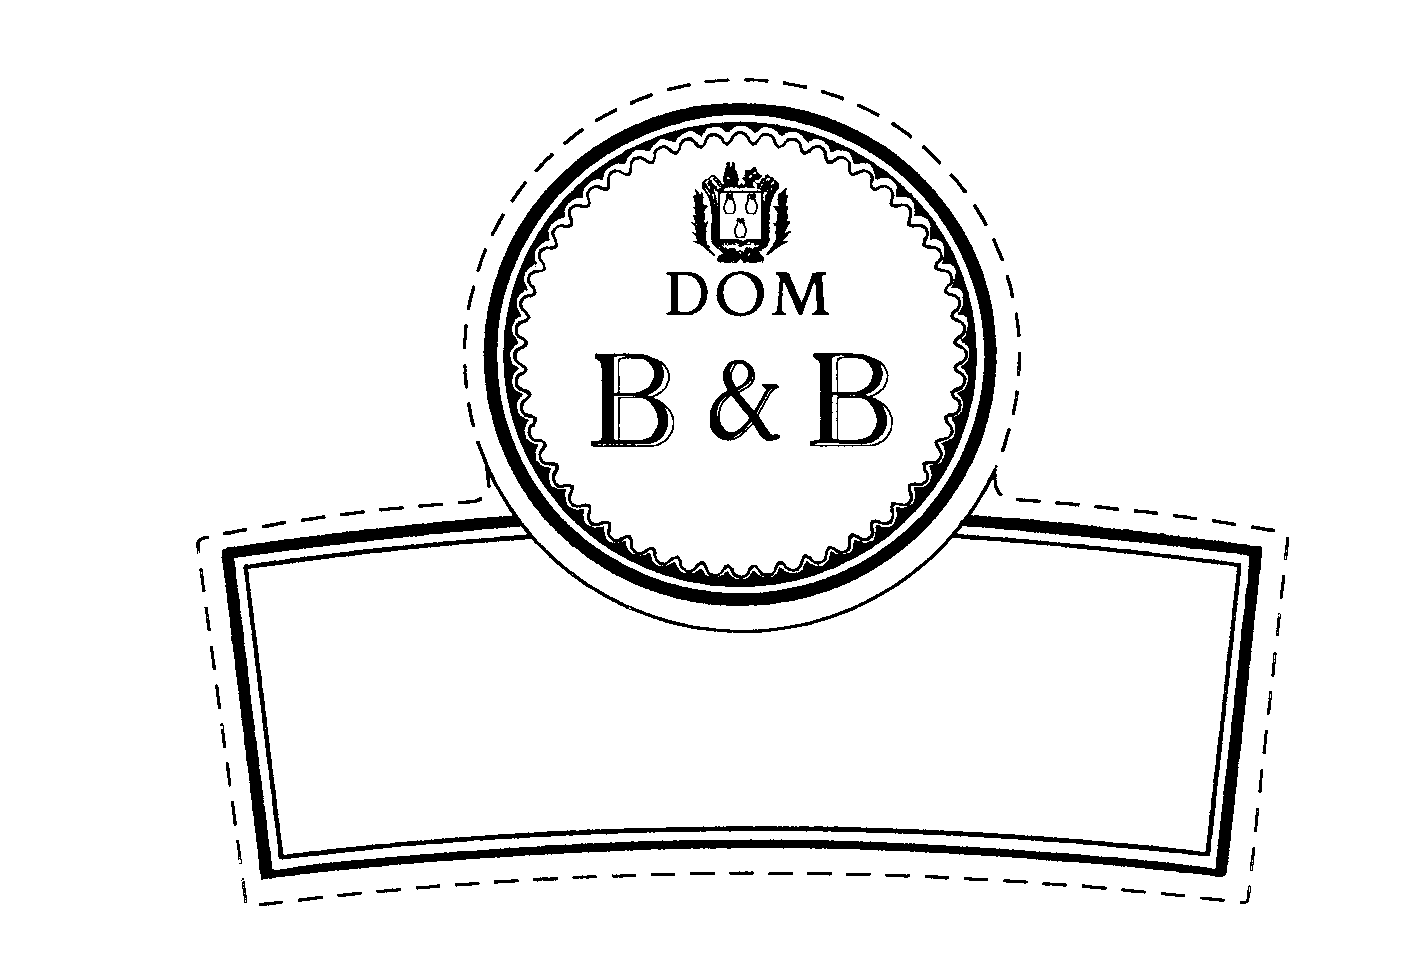  B &amp; B DOM